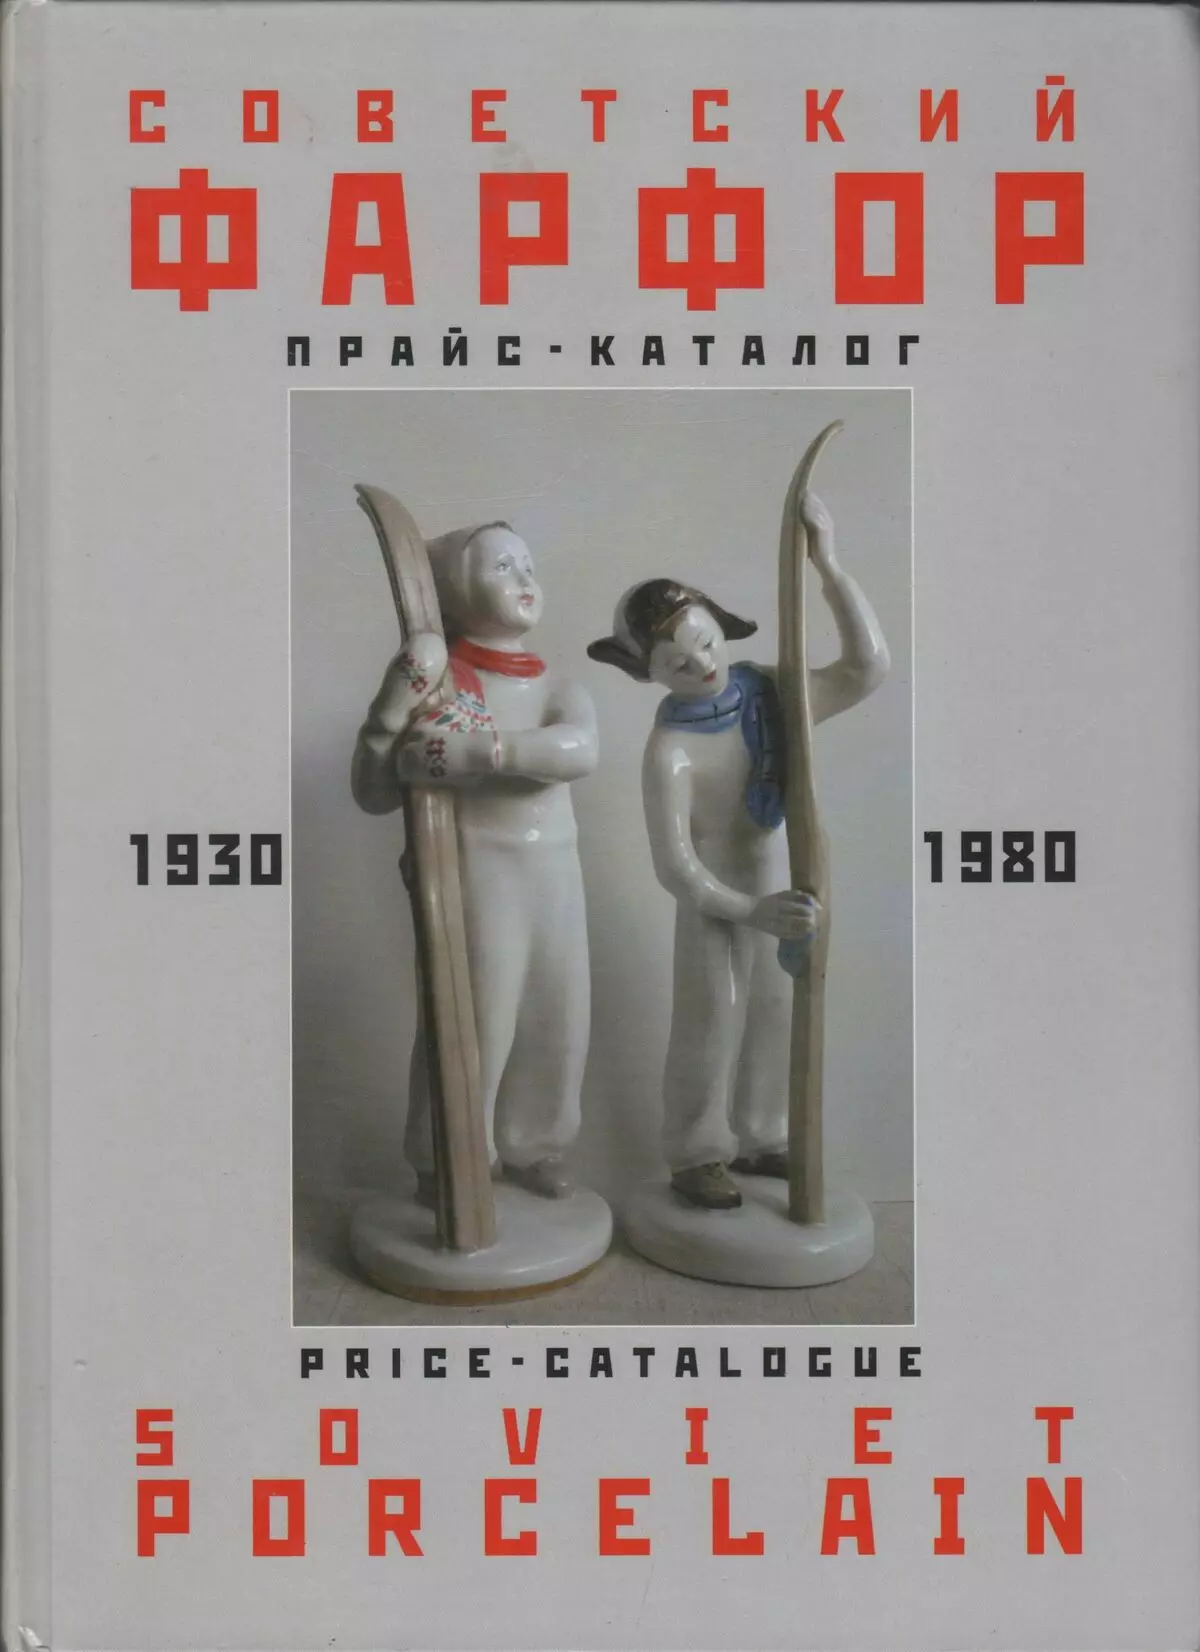 Figurines na USSR: Figurines mafi tsada na Soviet lokacin. Snow Maiden figurines da kuma wani Skater, bear da dawakai, skier da sauran samfuran USSR 24823_71